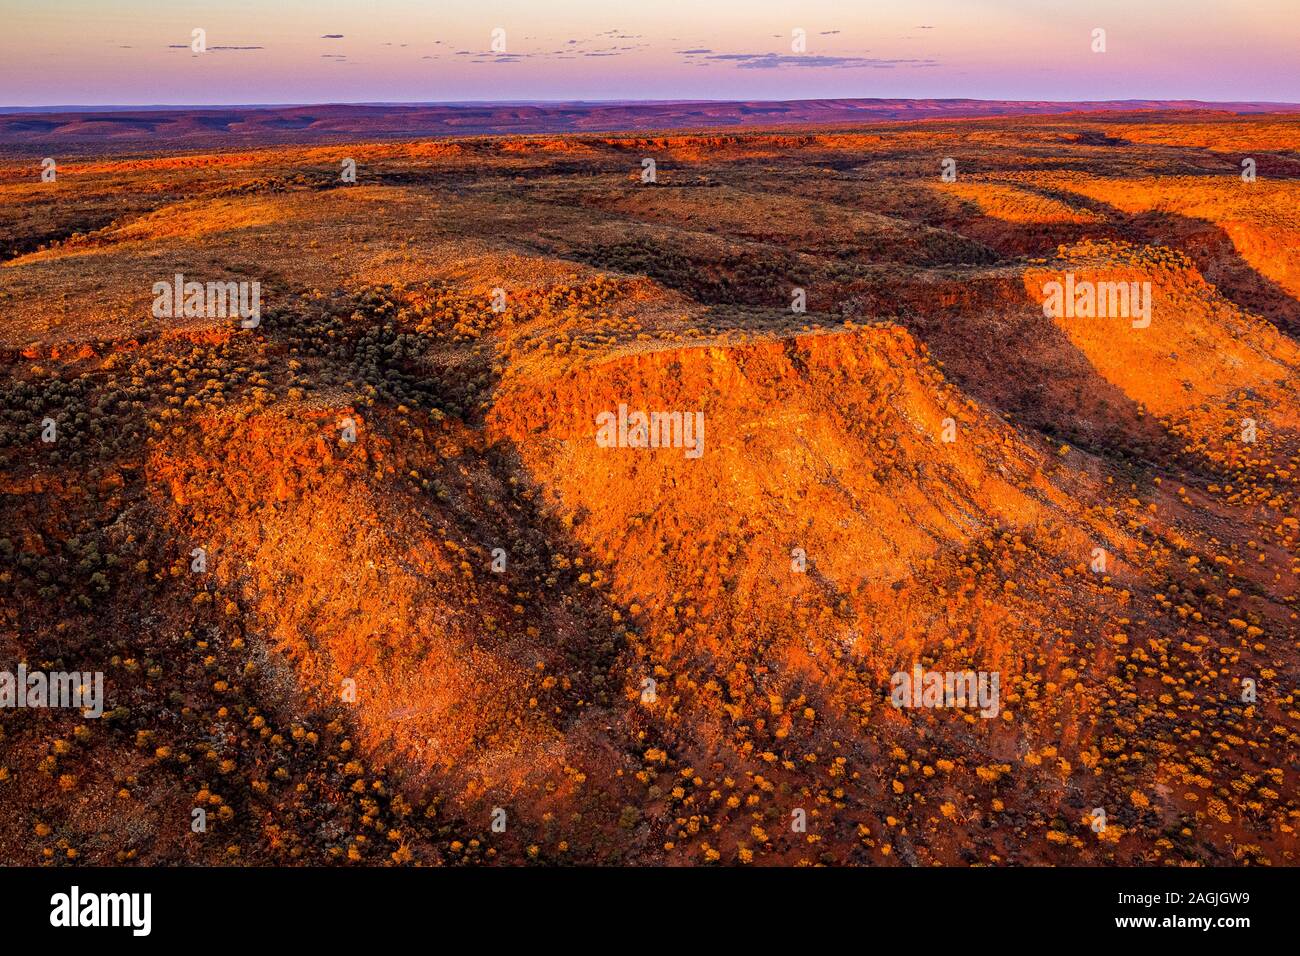 Un coucher de soleil du désert australien à distance près de Kings Creek en Australie centrale. Le George Gill va dominer le paysage. Banque D'Images